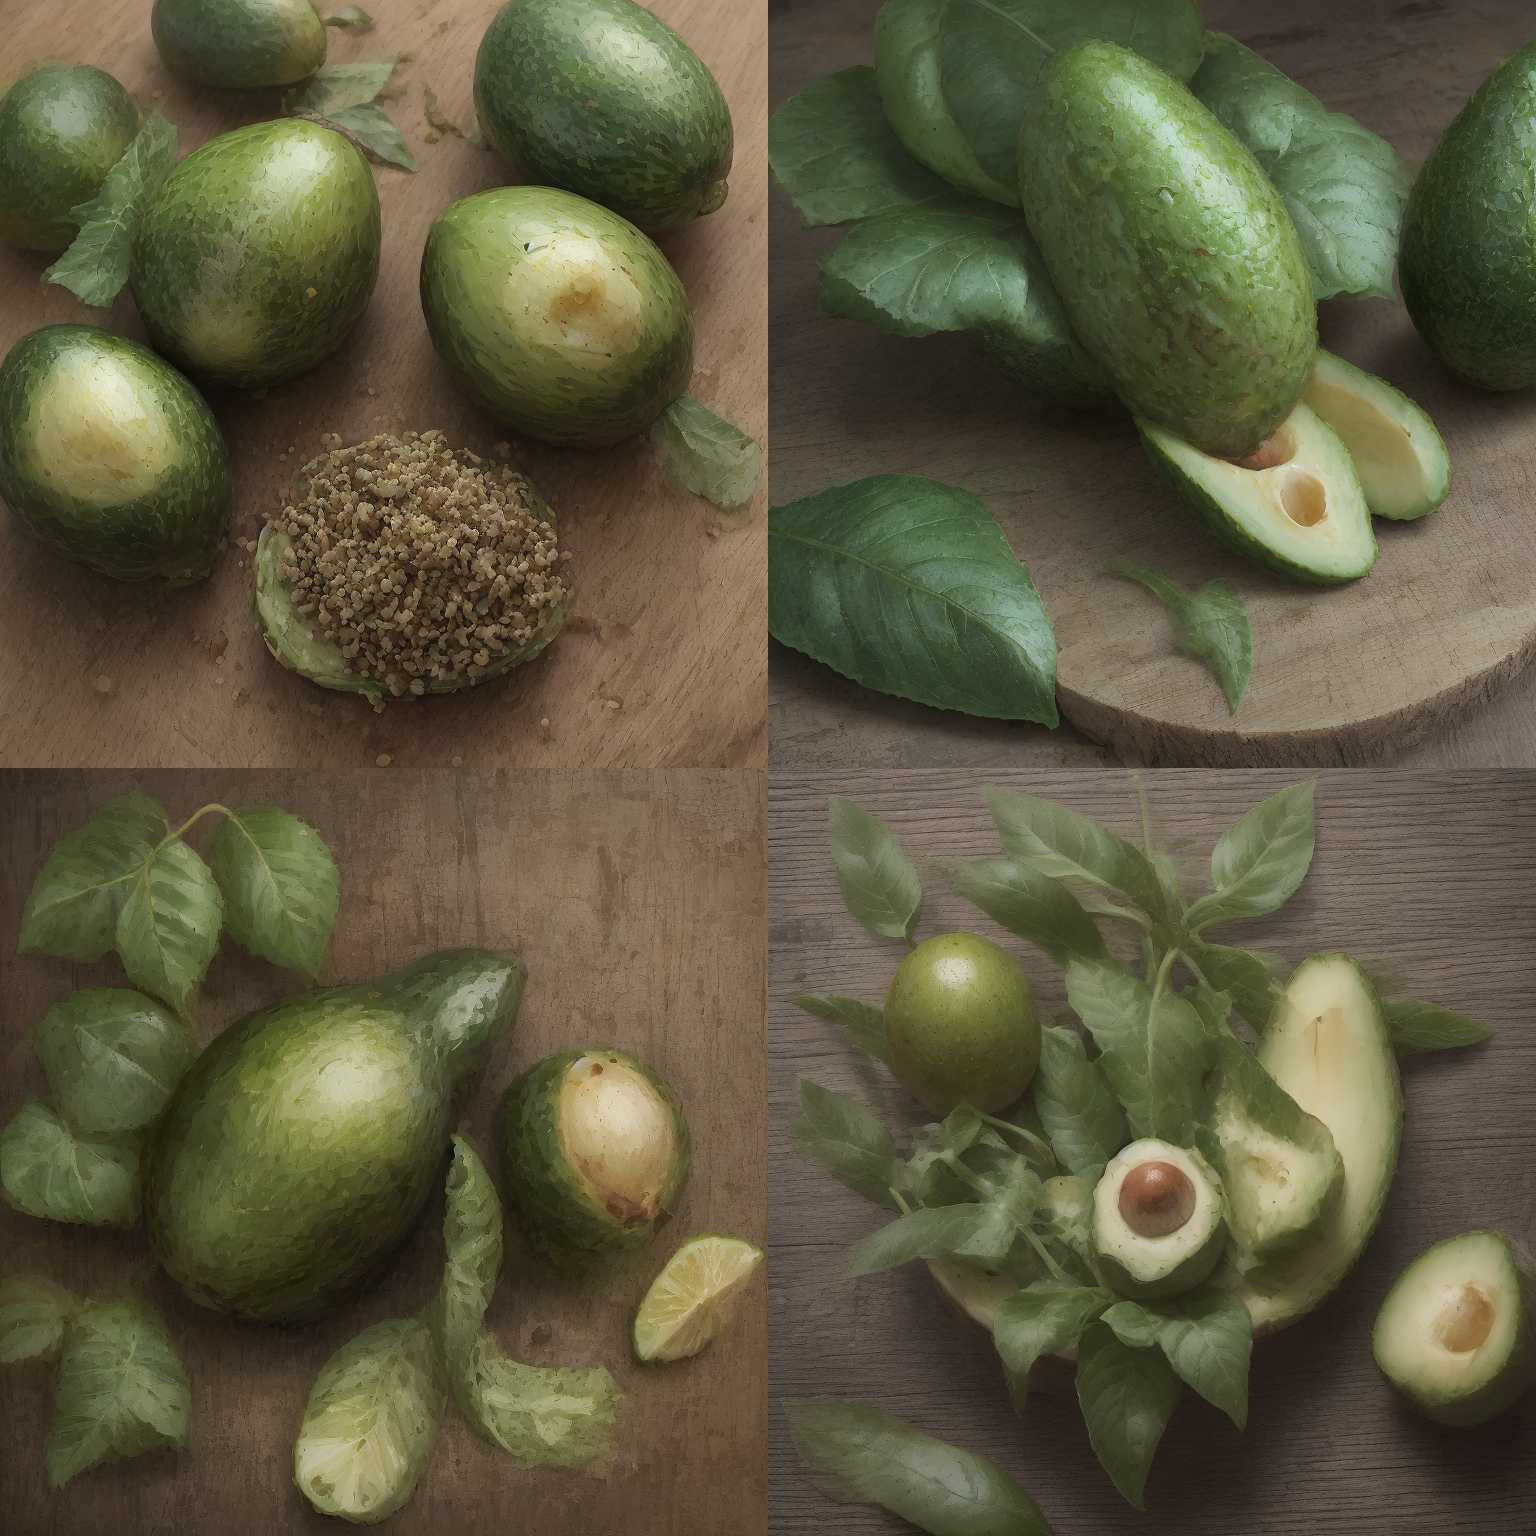 A premature avocado